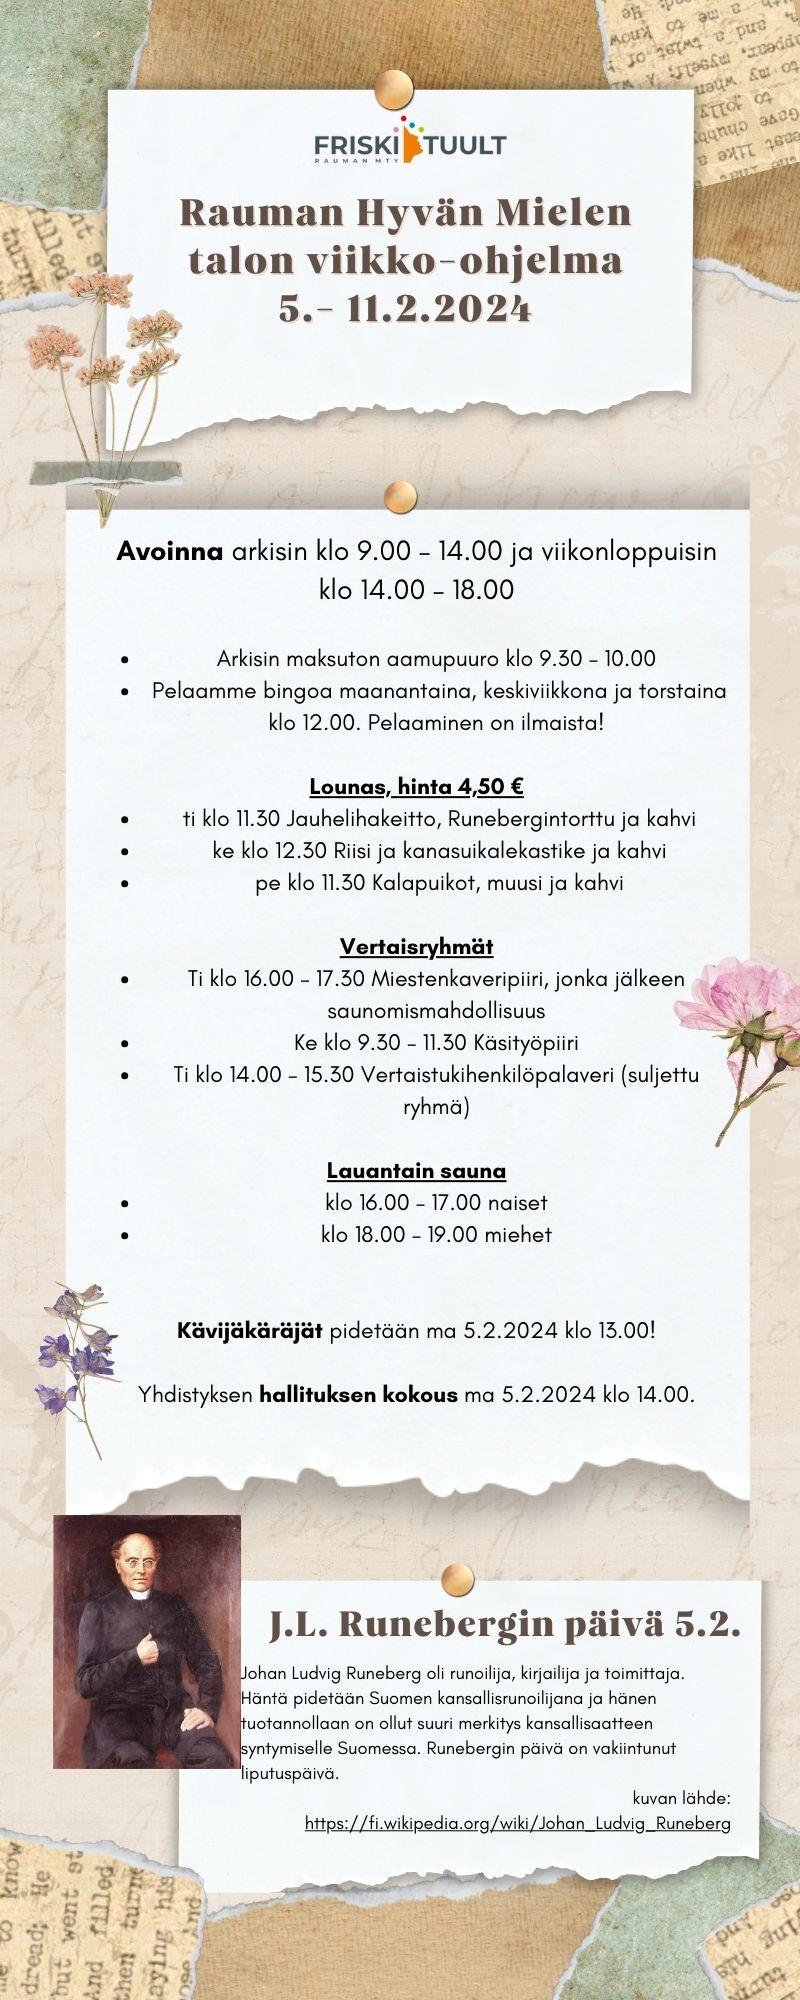 kuvaan kirjoitettu viikko-ohjelma jonka löydät alta, Lisäksi siinä on Runebergin kuva.